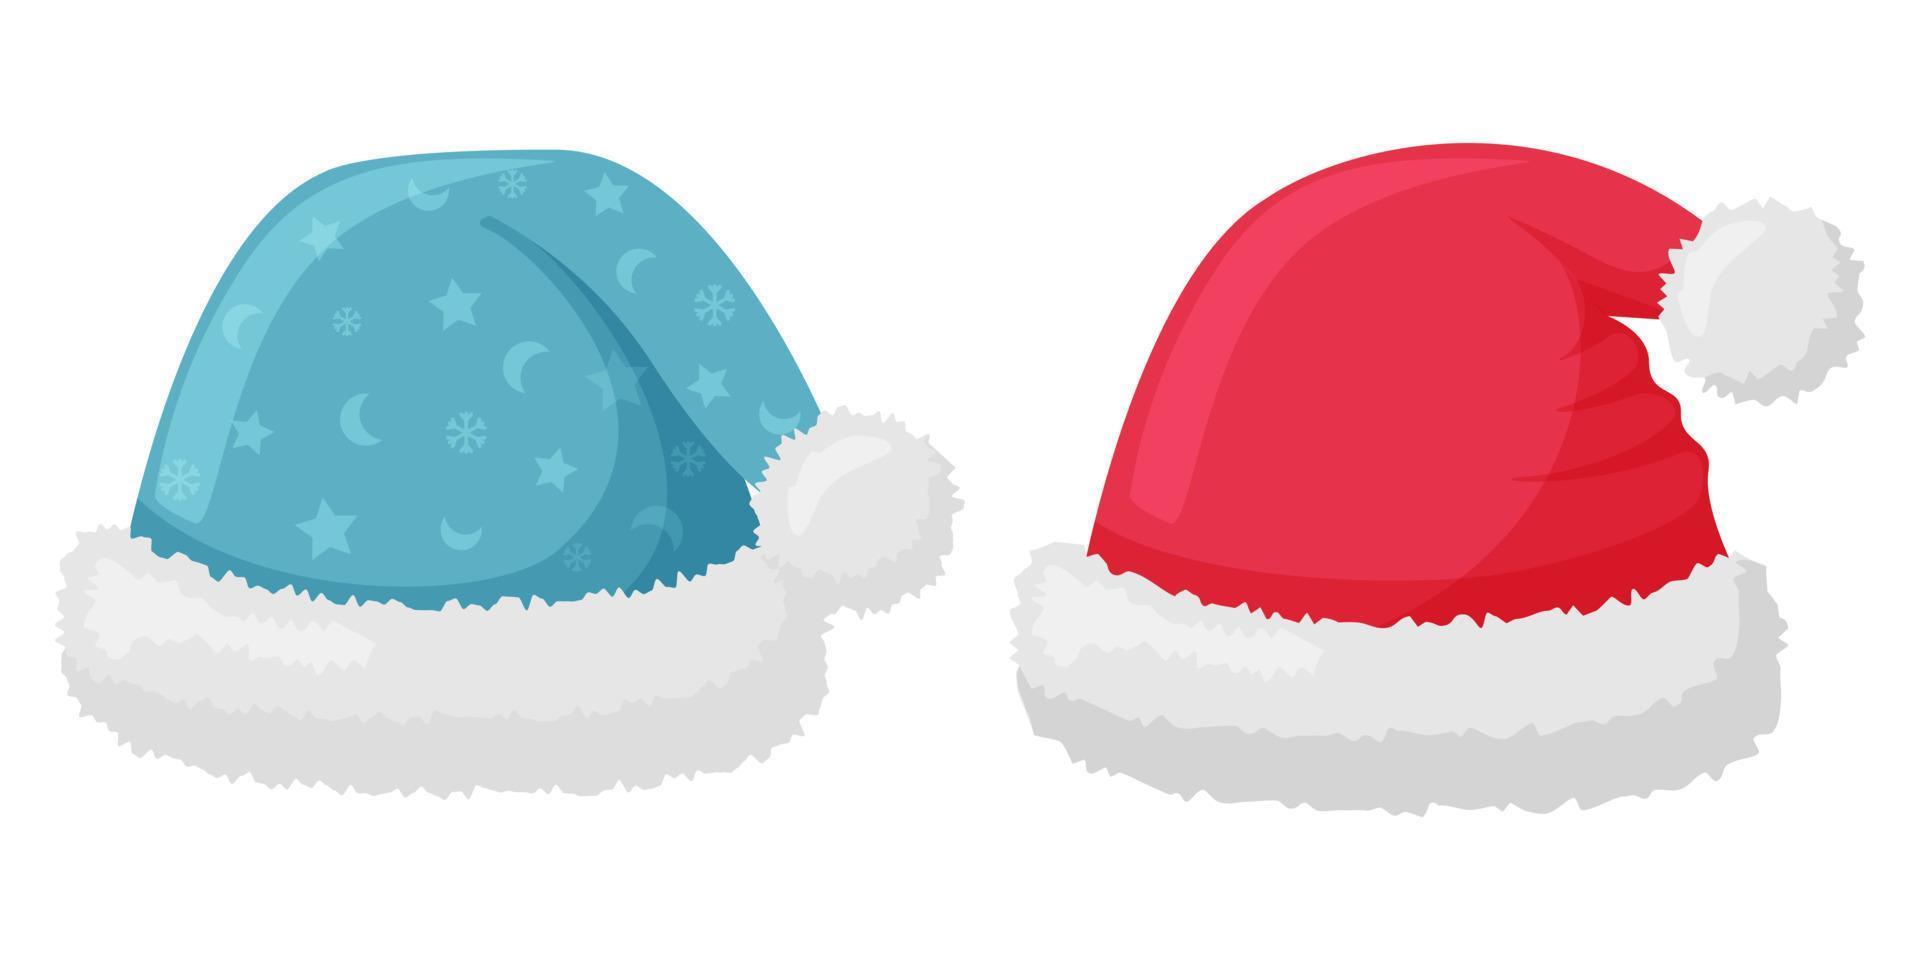 die mütze des weihnachtsmanns ist rot und blau mit einem muster, pelz und einem pompon. das winterzubehör für den kopf im flachen stil isoliert auf weiß. elemente der kleidung für die gestaltung von winter, neujahr und weihnachten vektor